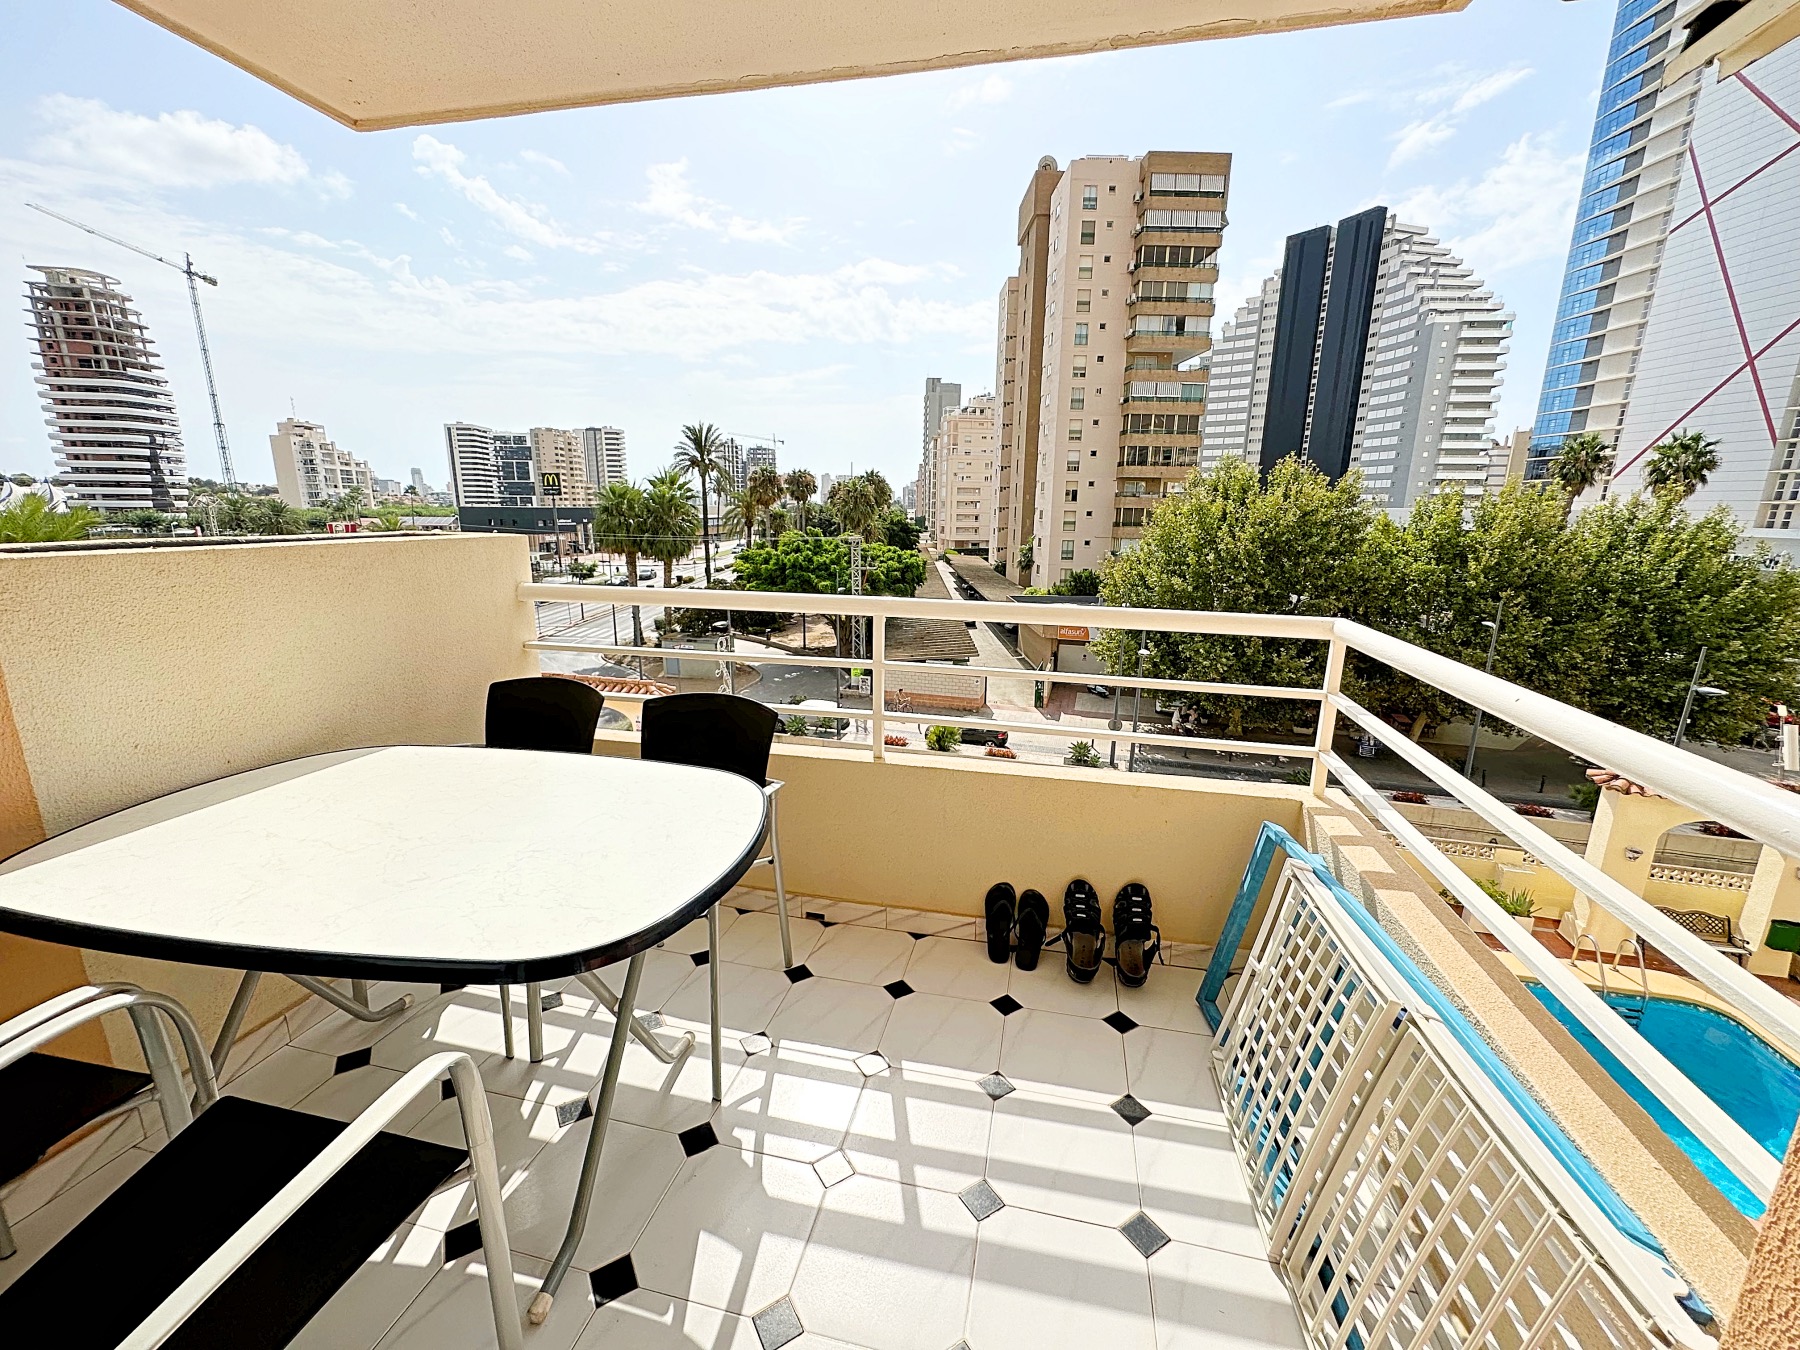 Mooi appartement in Calpe in de buurt van het Arenal strand, met vrij uitzicht.